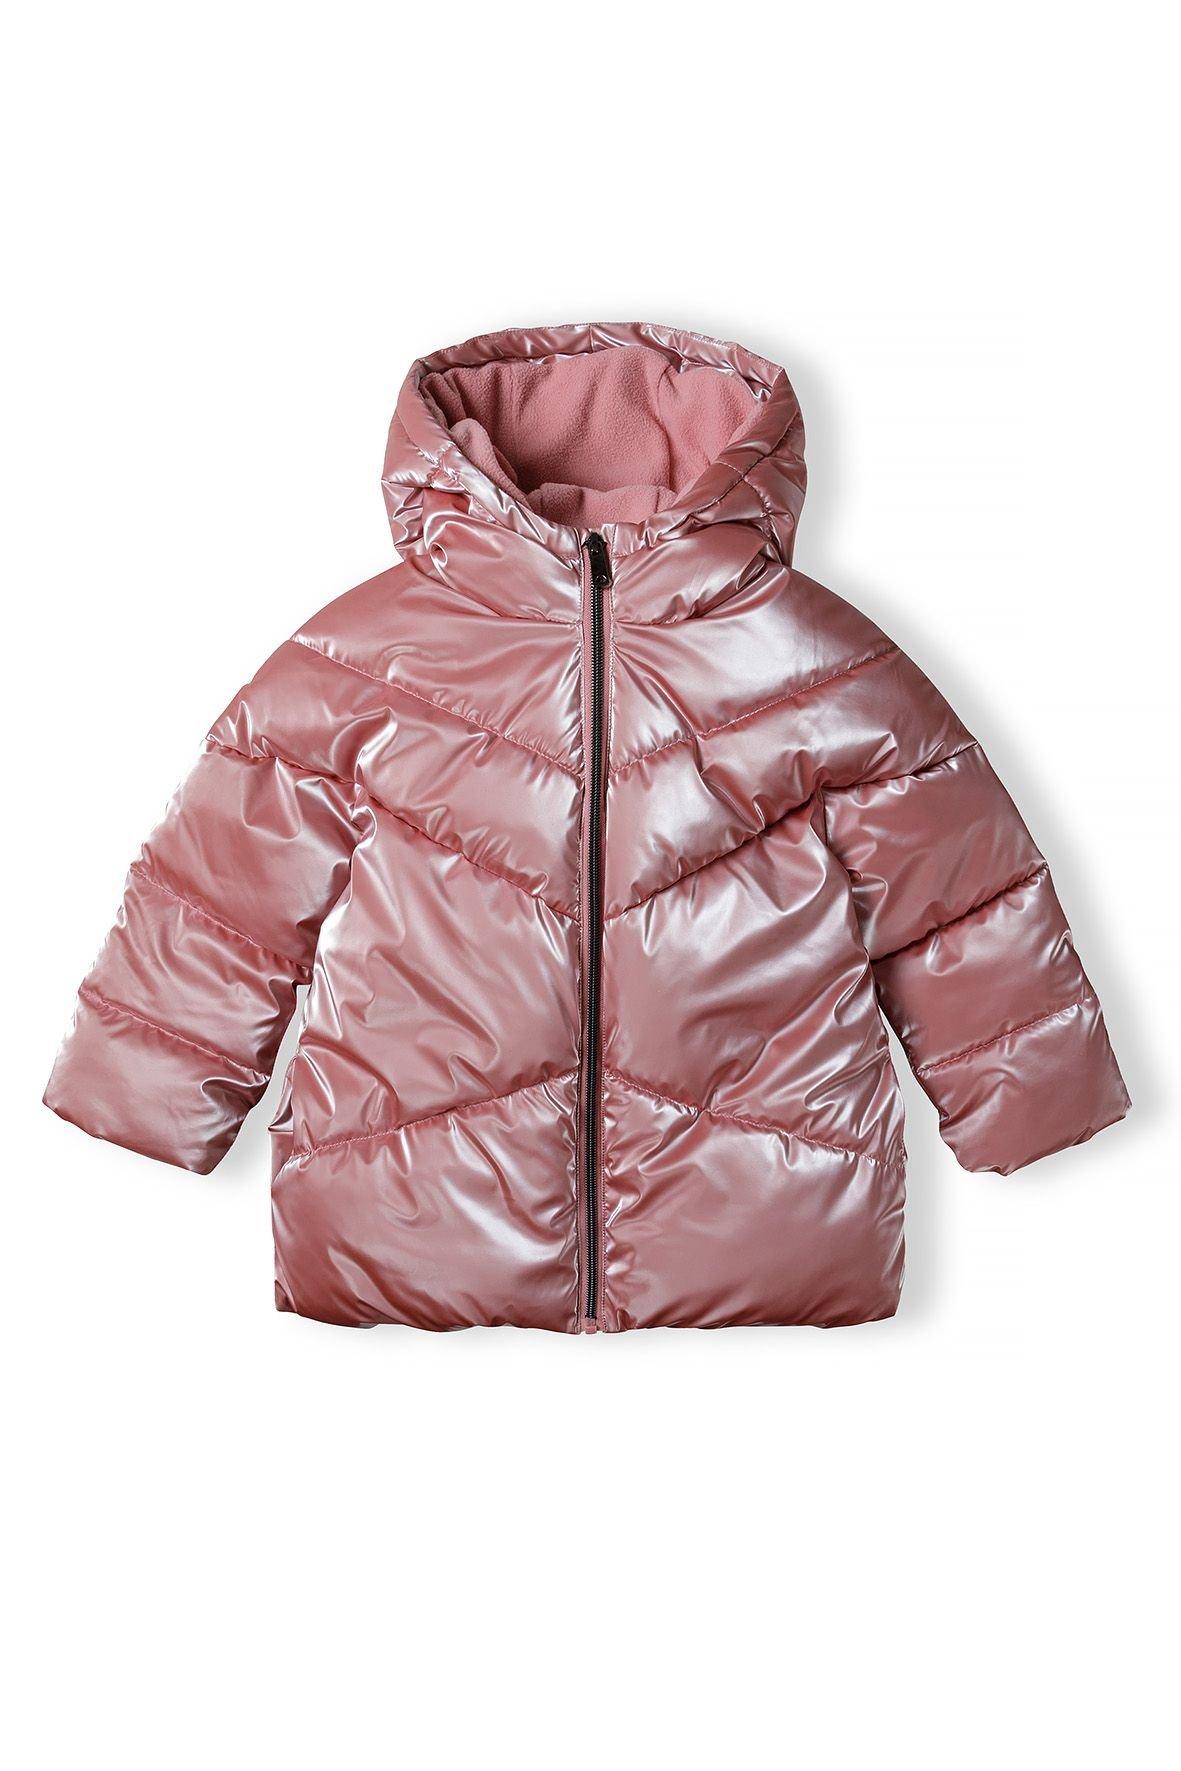 Стеганая куртка с эффектом металлик Minoti, розовый